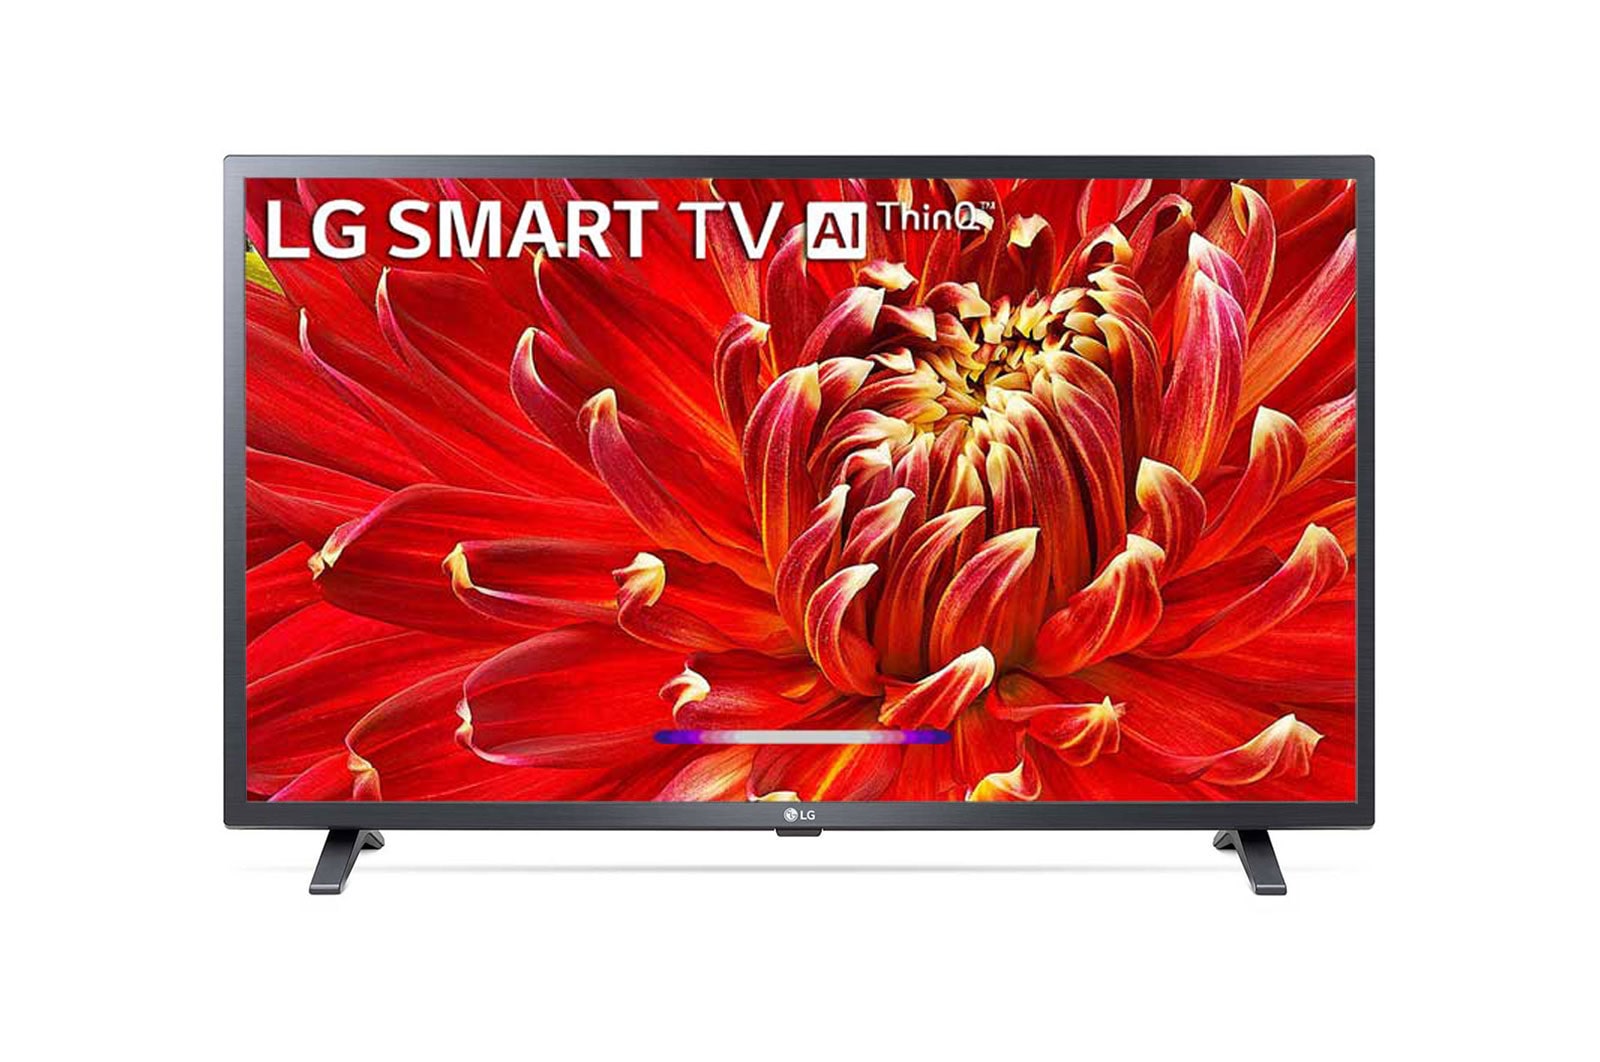 LG LED TV 32 inch LM630B Series HD HDR LED TV | LG Africa